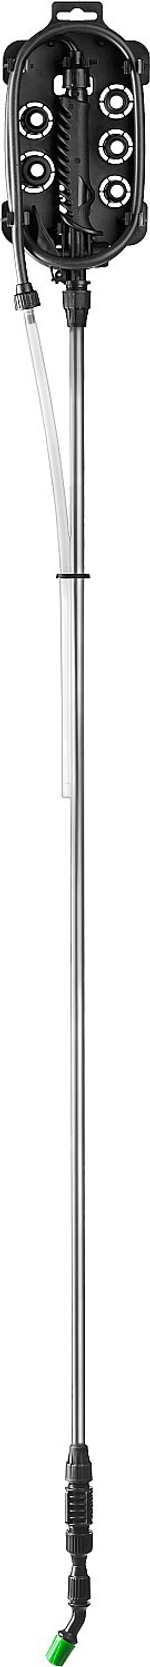 Телескопический удлинитель GRINDA ES-2200 1260-2200 мм для ранцевых опрыскивателей алюминиевый